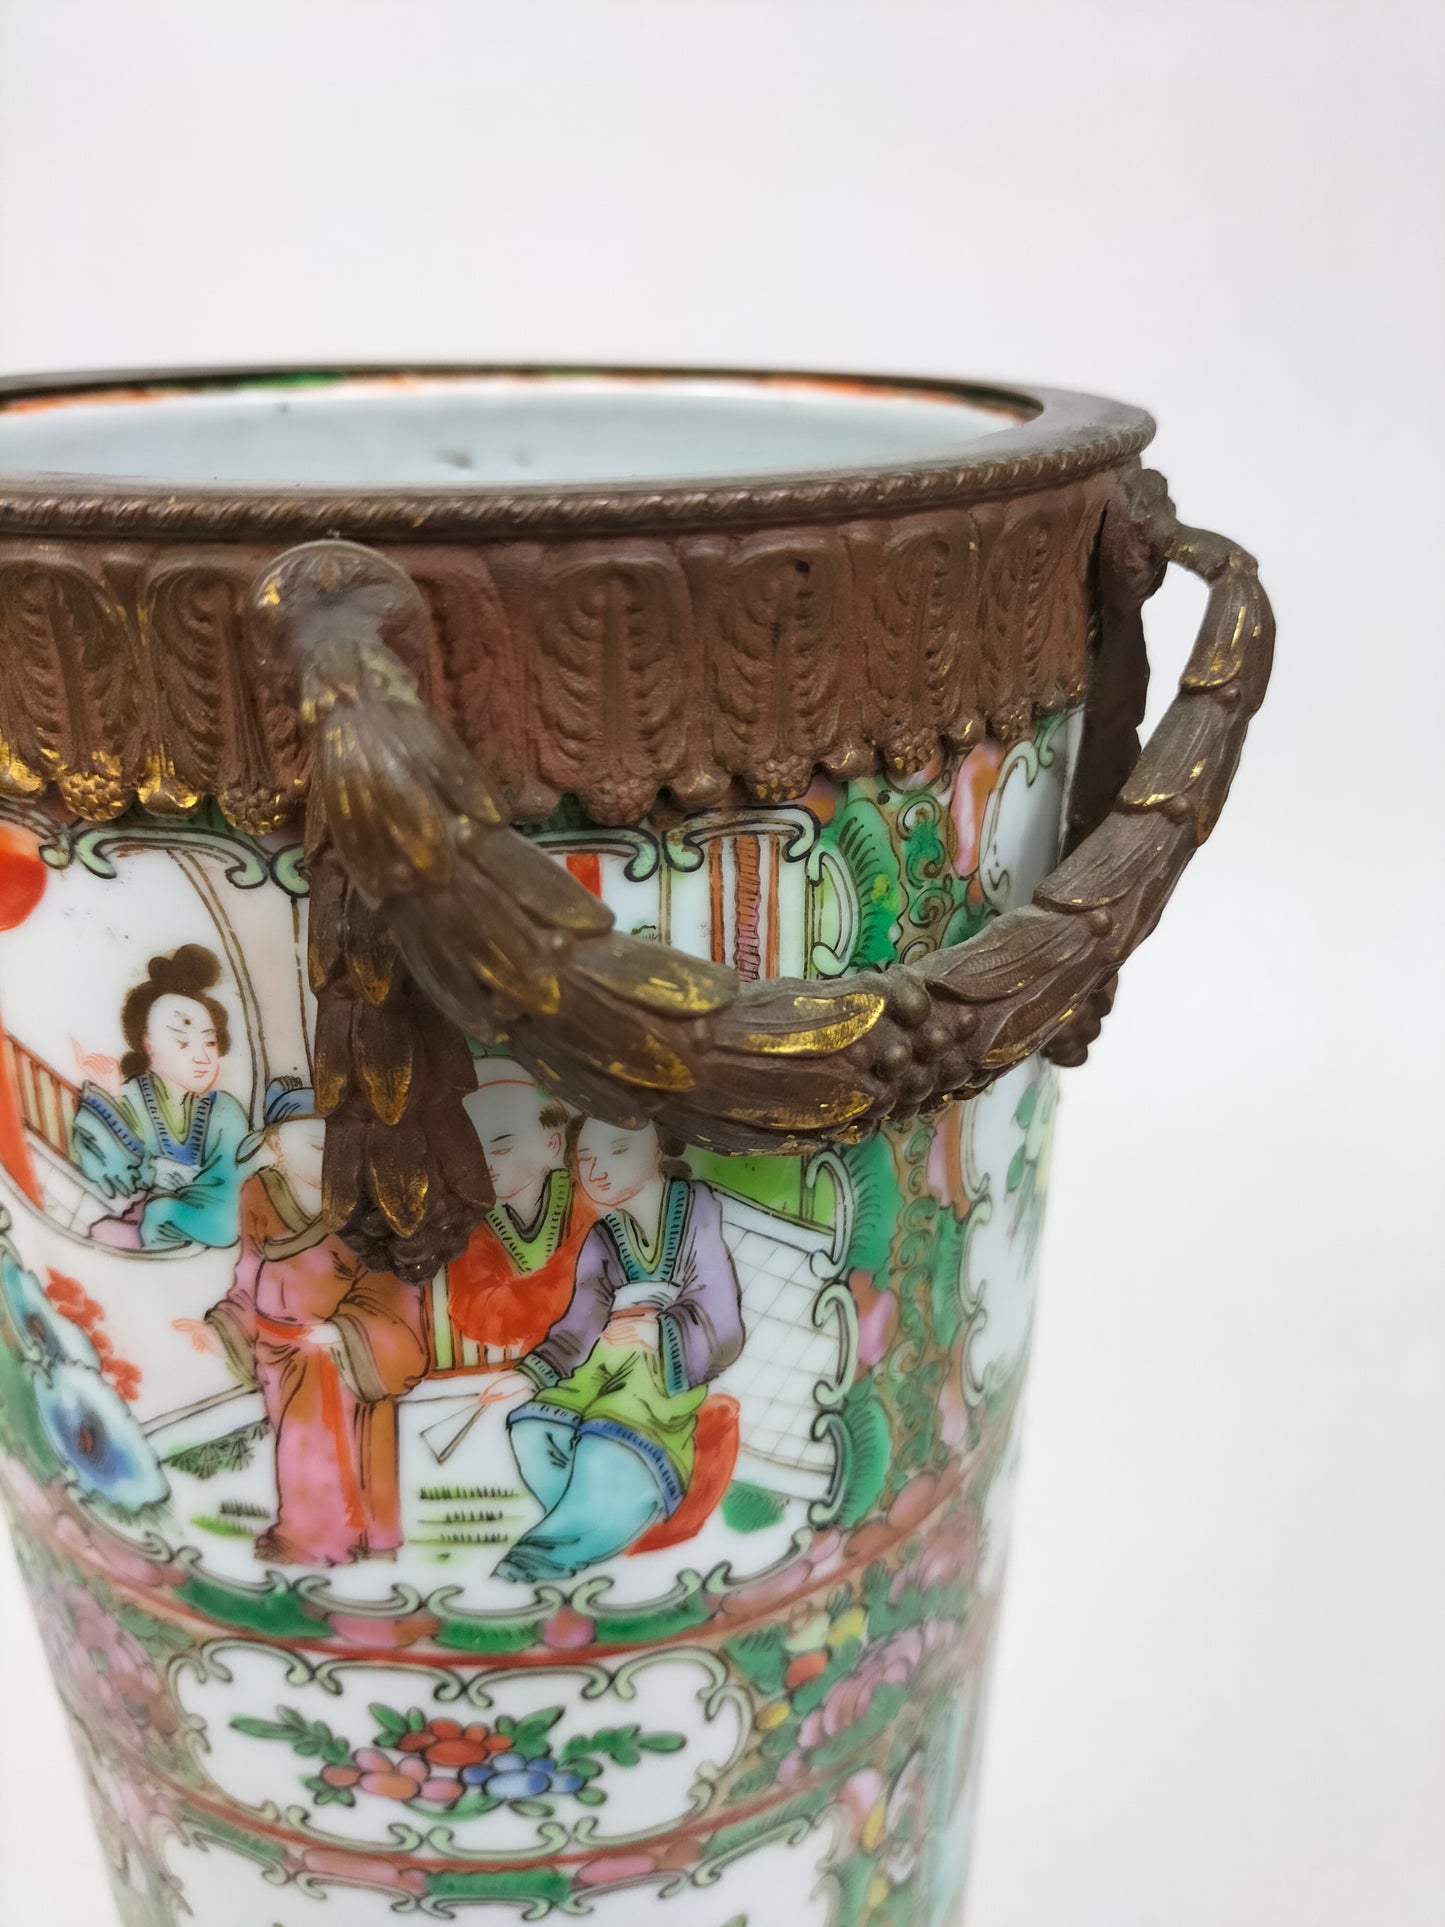 古董中国广州玫瑰花章花瓶，镶嵌在镀金框架中//清朝 - 19 世纪